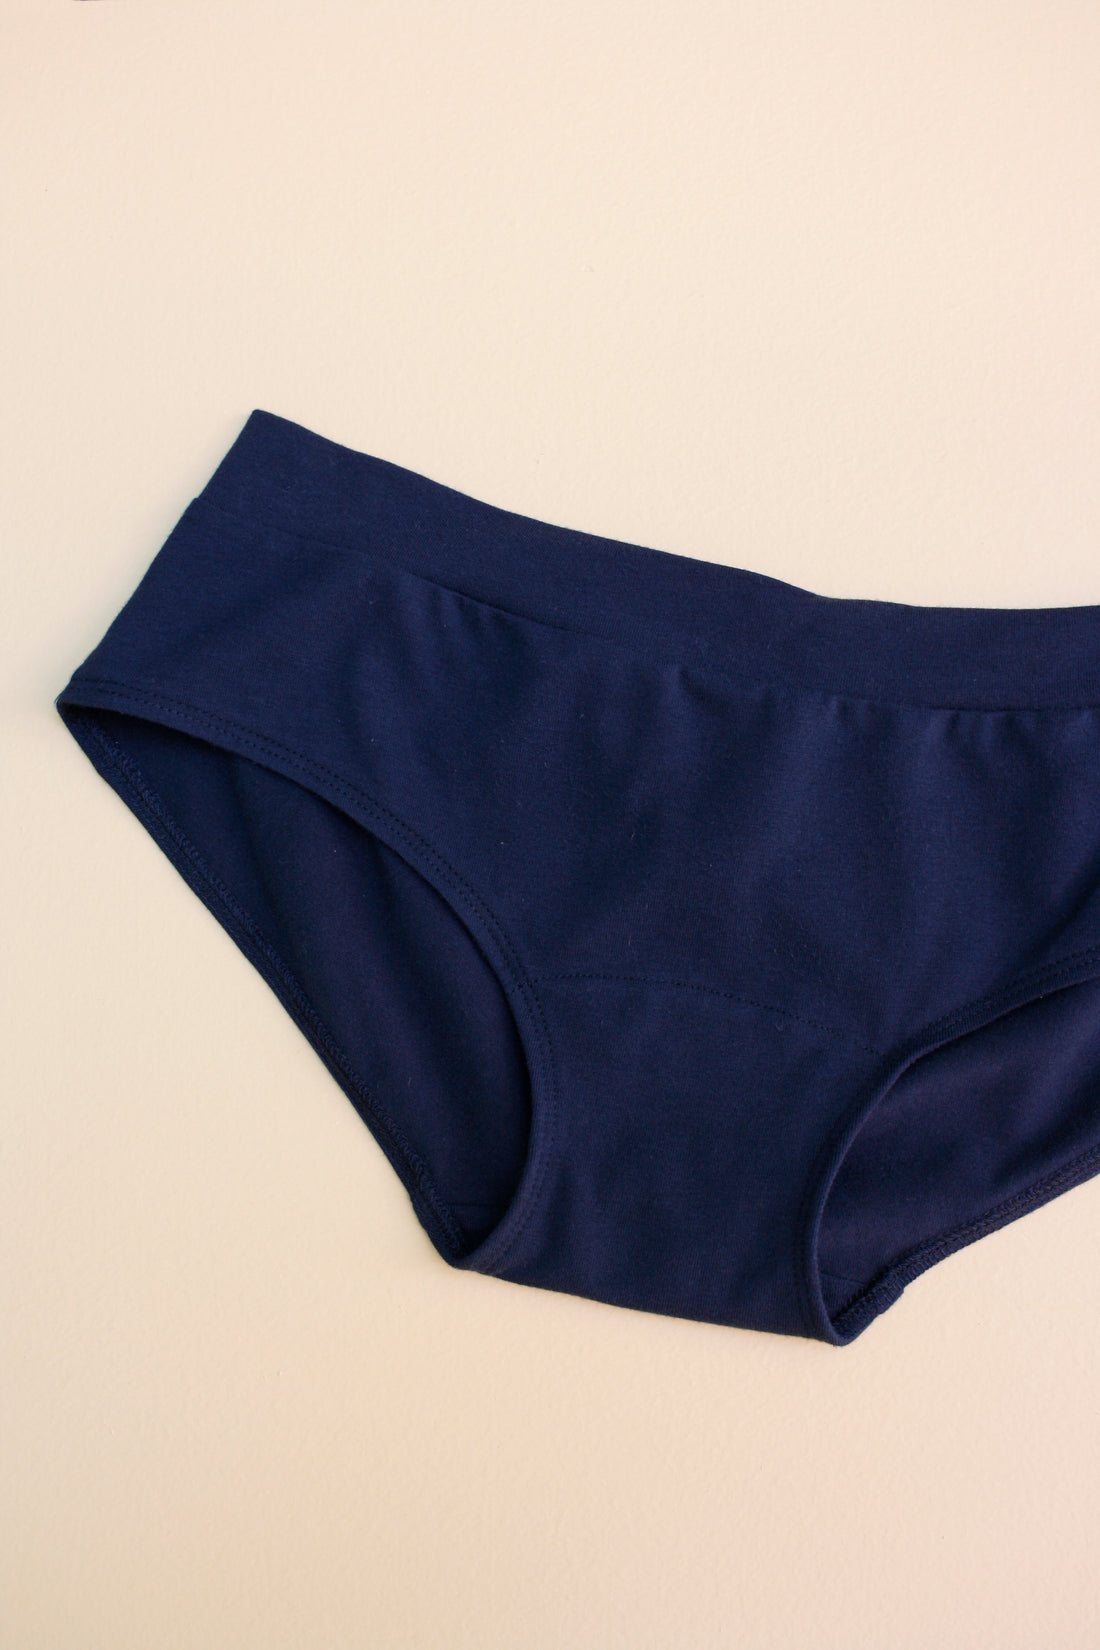 Compression Underwear Women Comfortable Low Waist Underwear Blue L